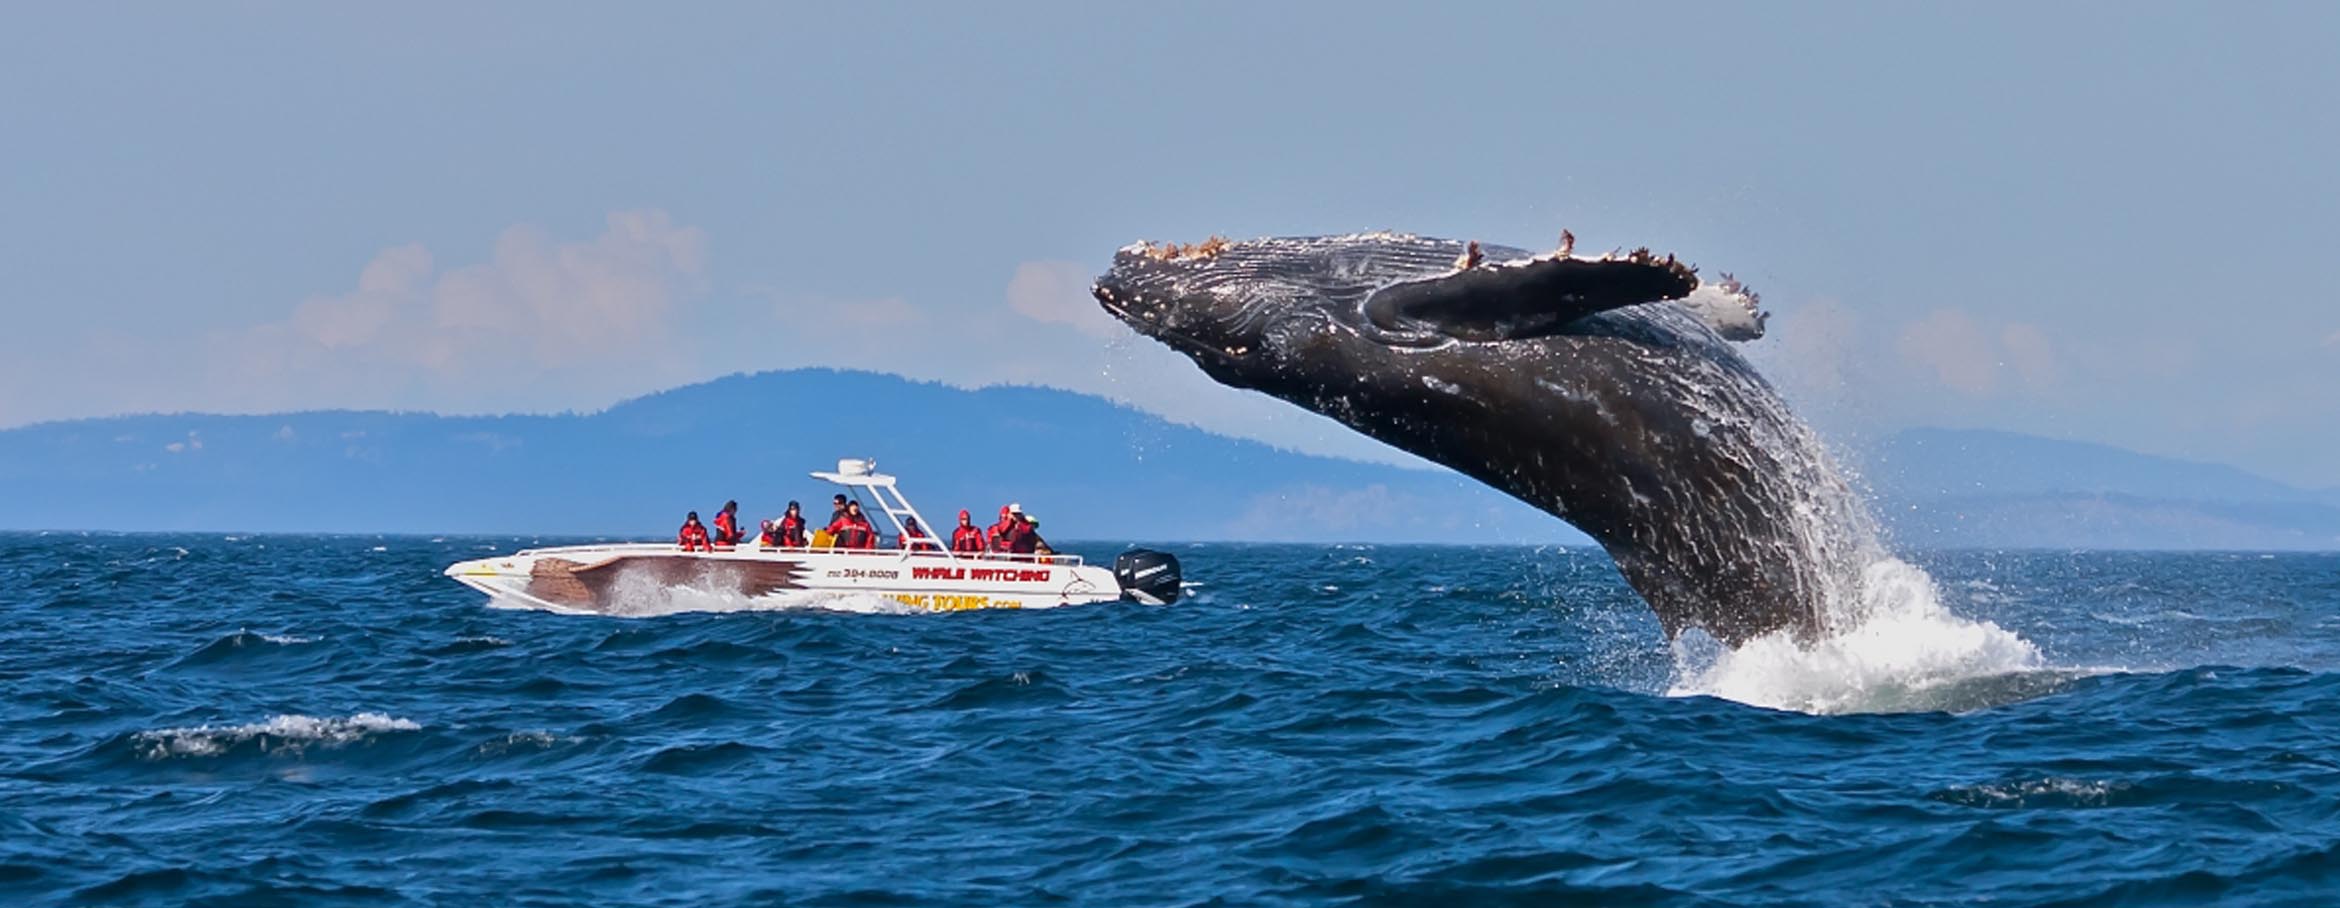 تماشای نهنگ در میریسا